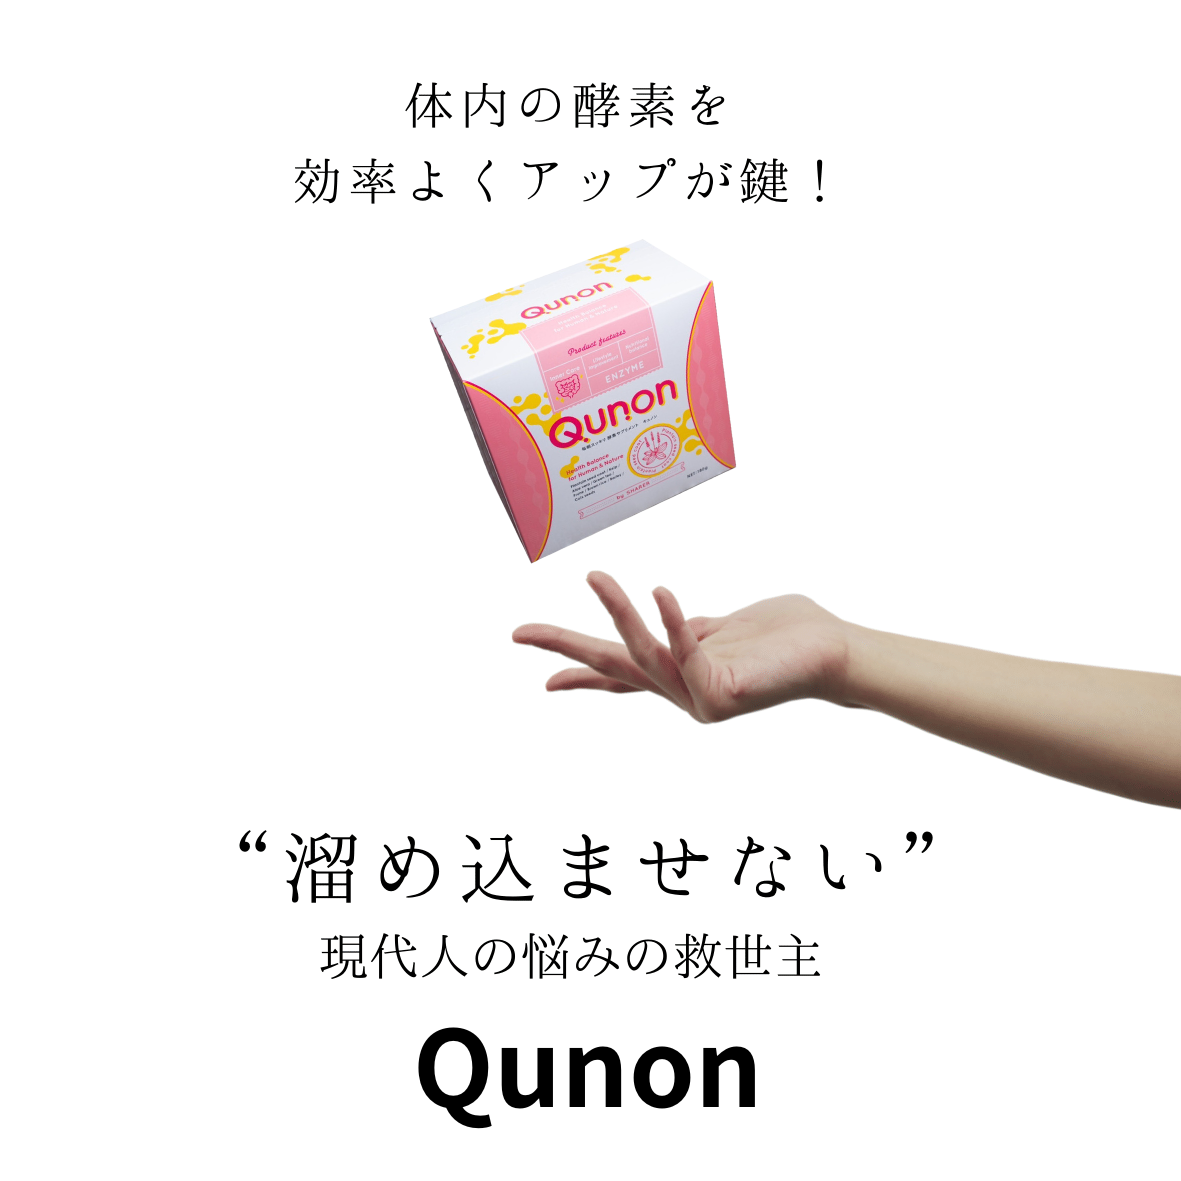 キュノン Qunon 酵素サプリ - ダイエットサプリ